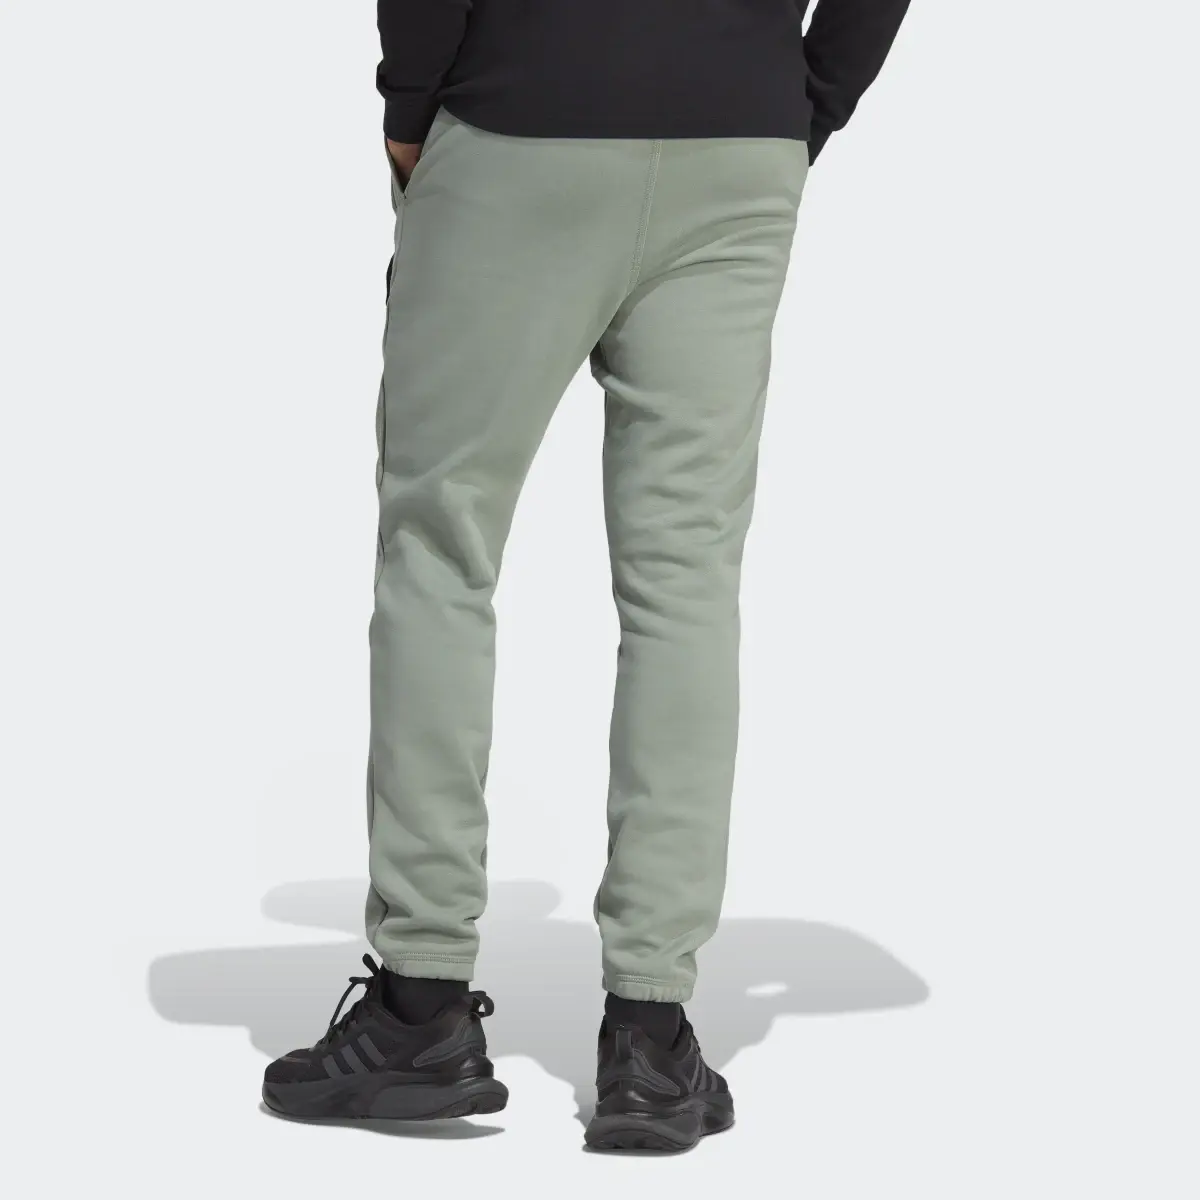 Adidas Lounge Fleece Pants. 2